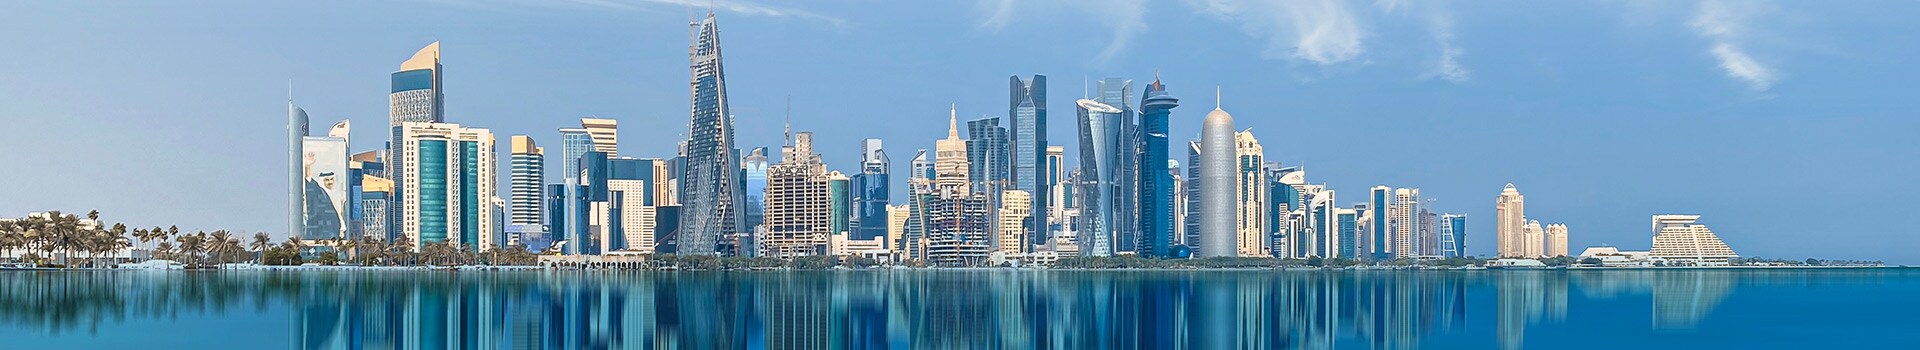 Mailand - Doha